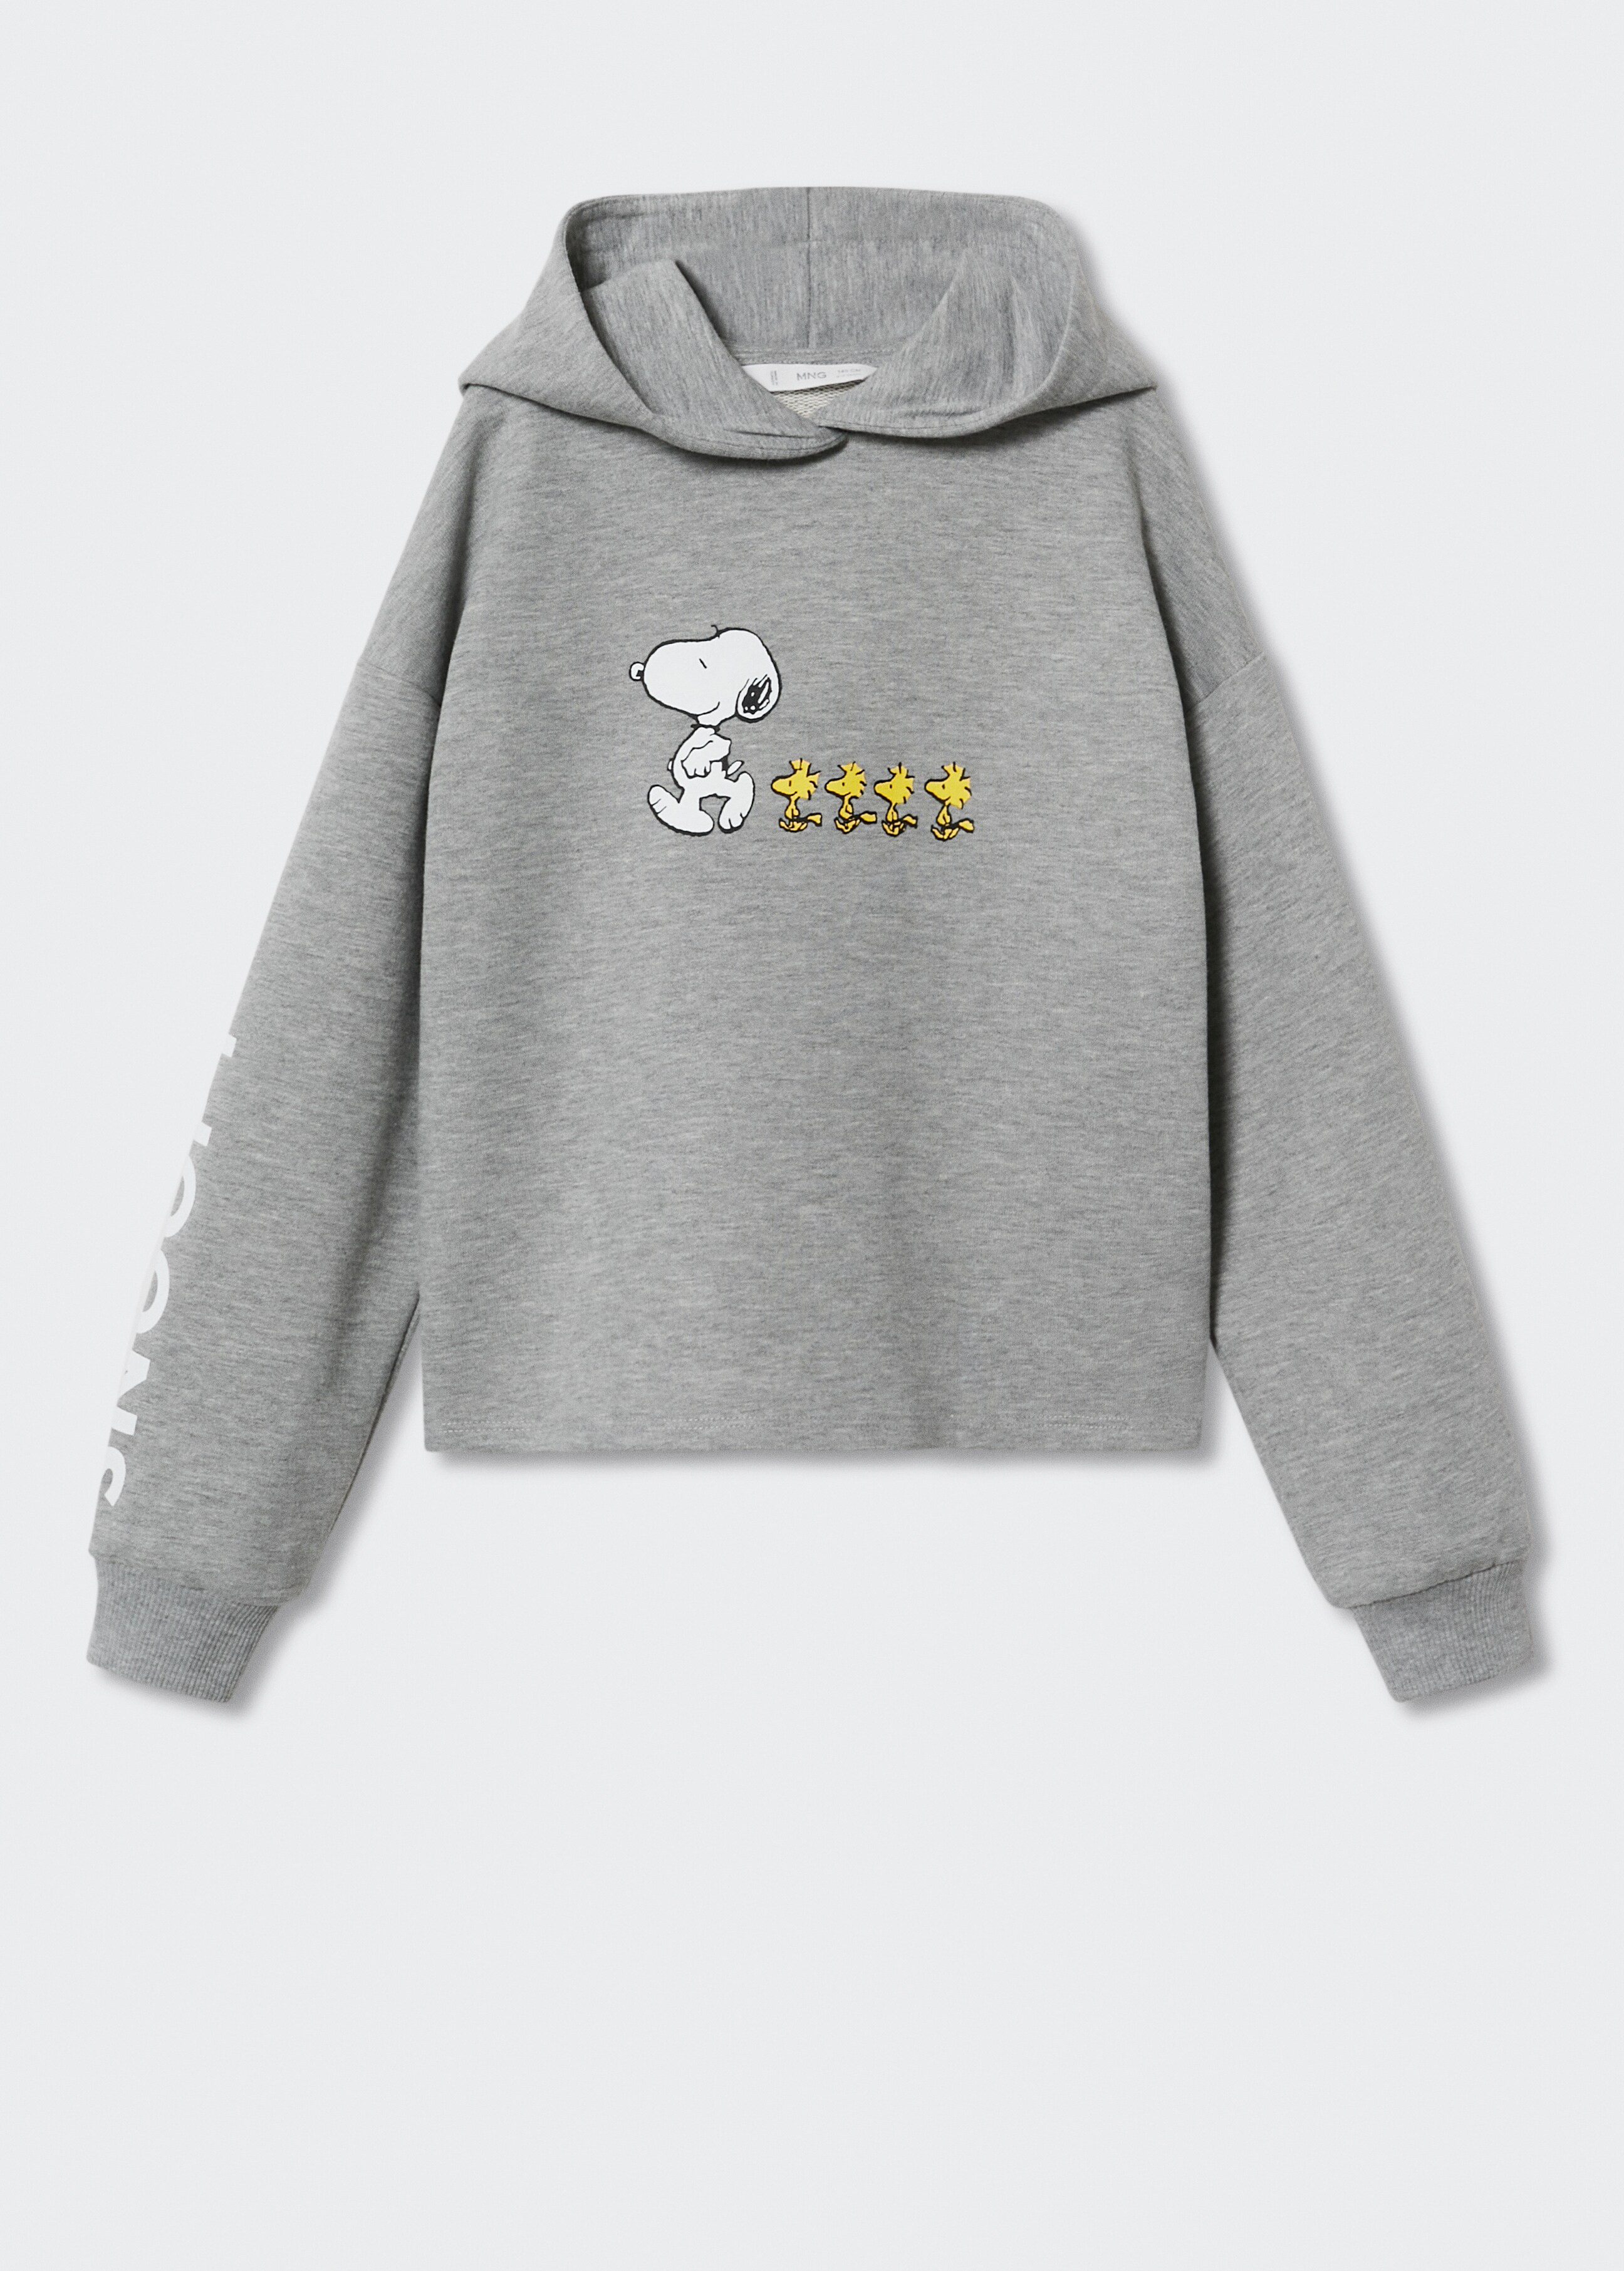 Sweatshirt do Snoopy com capuz - Artigo sem modelo